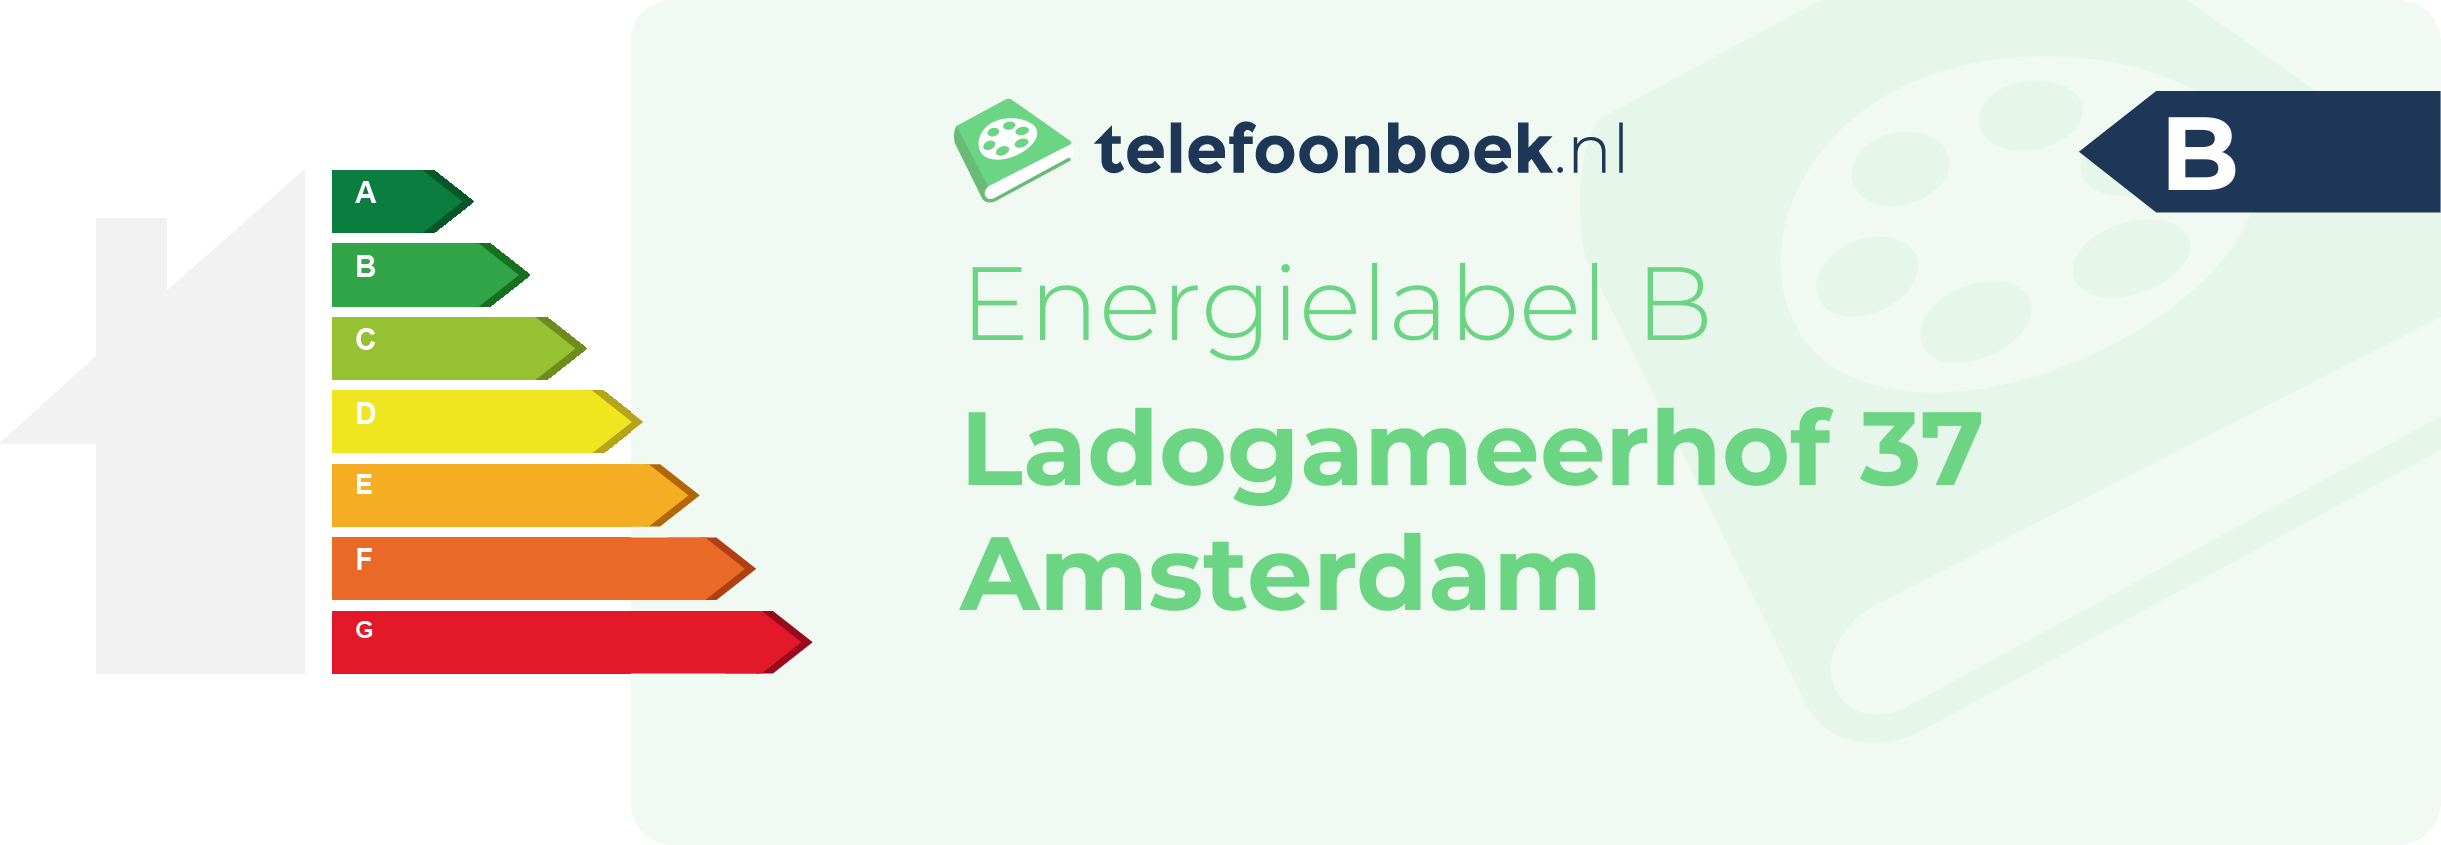 Energielabel Ladogameerhof 37 Amsterdam